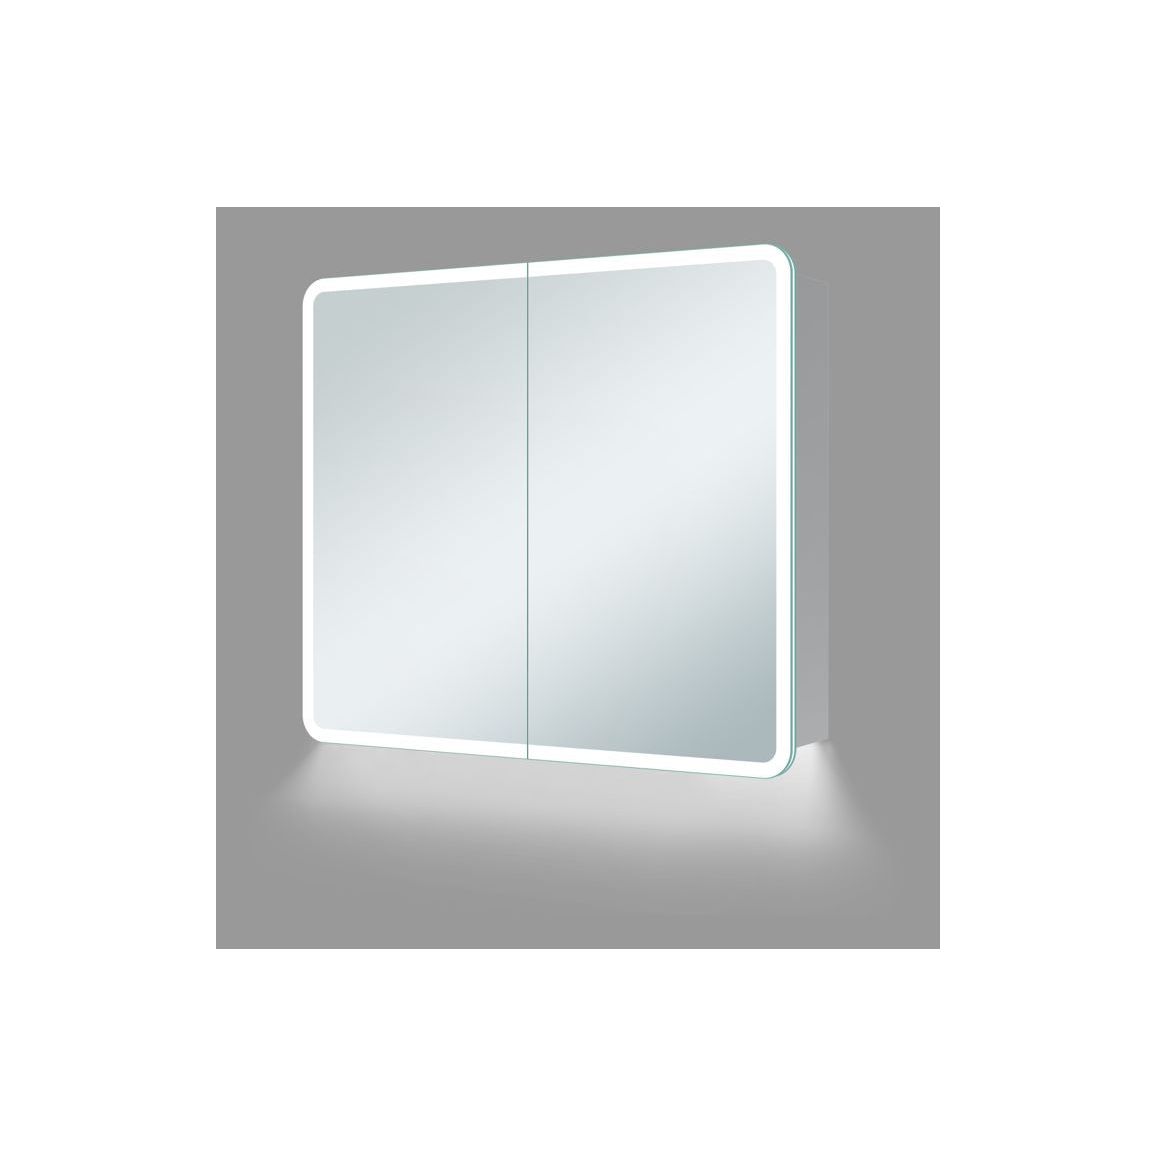 Akari 600mm 2 Door LED Mirrored Cabinet